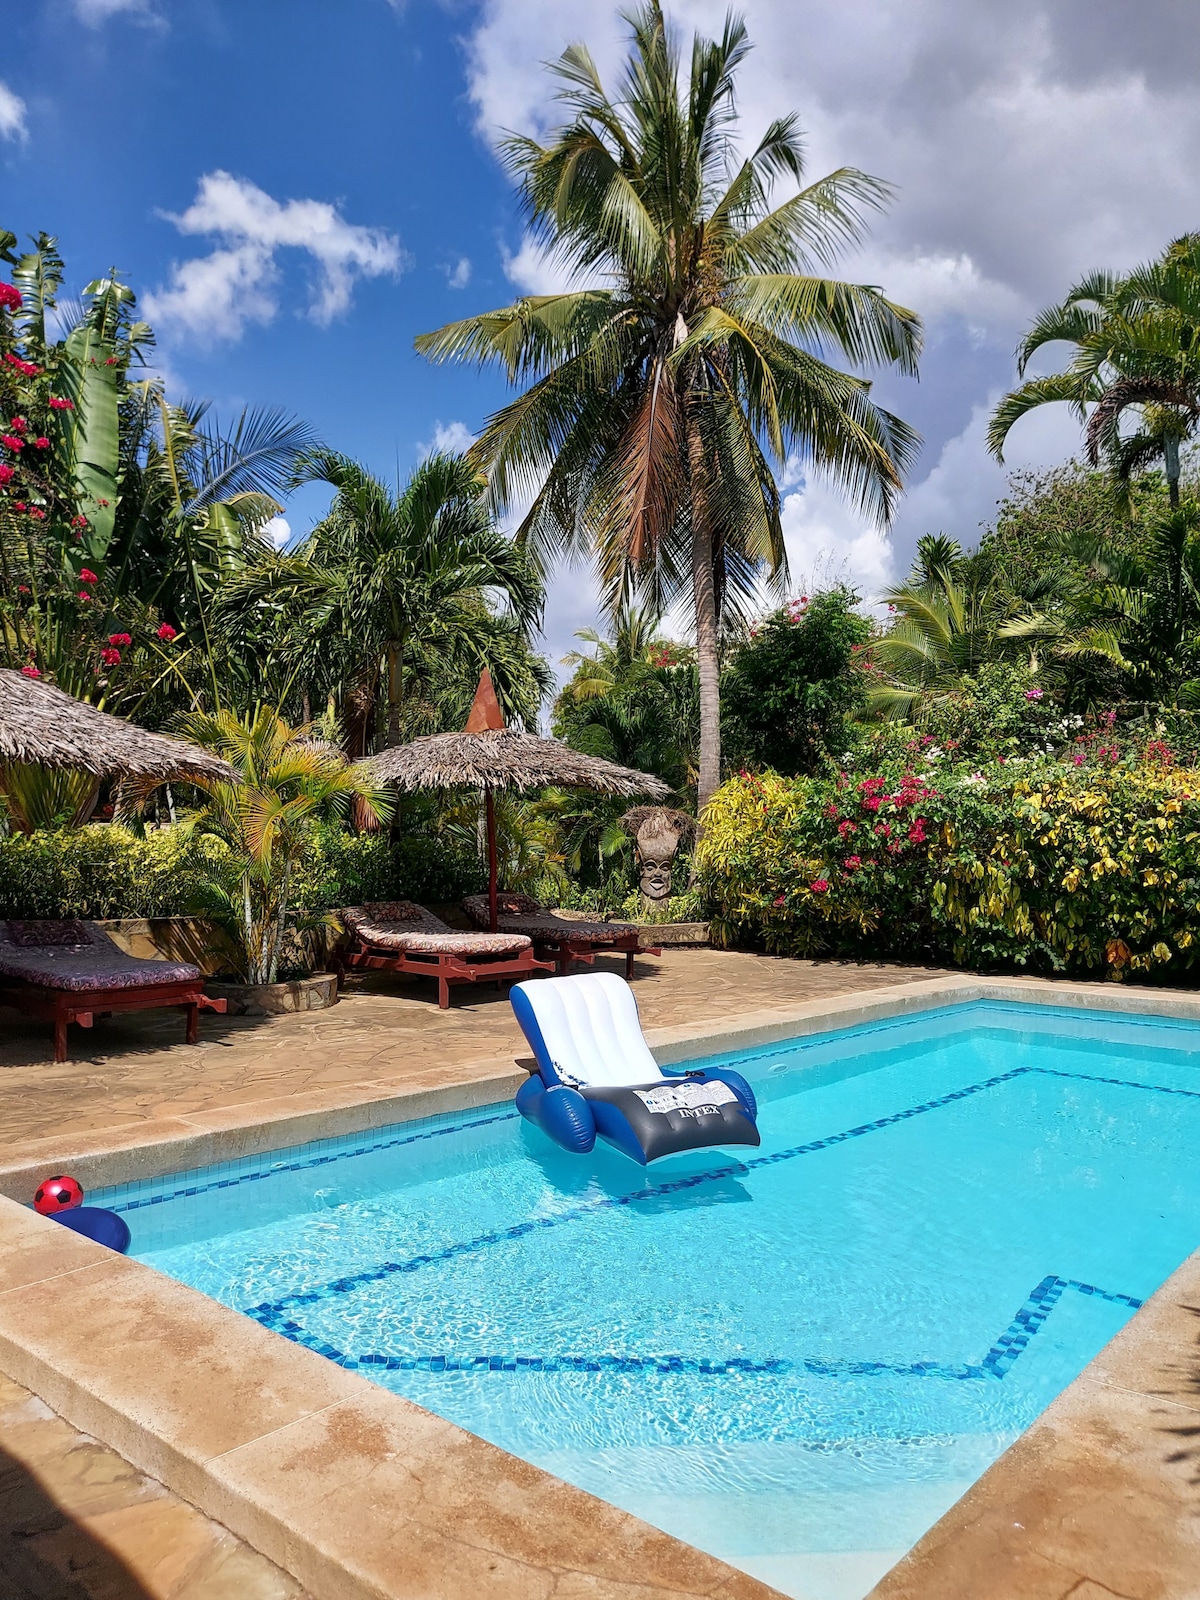 迪亚尼私人泳池棕榈别墅配备私人泳池